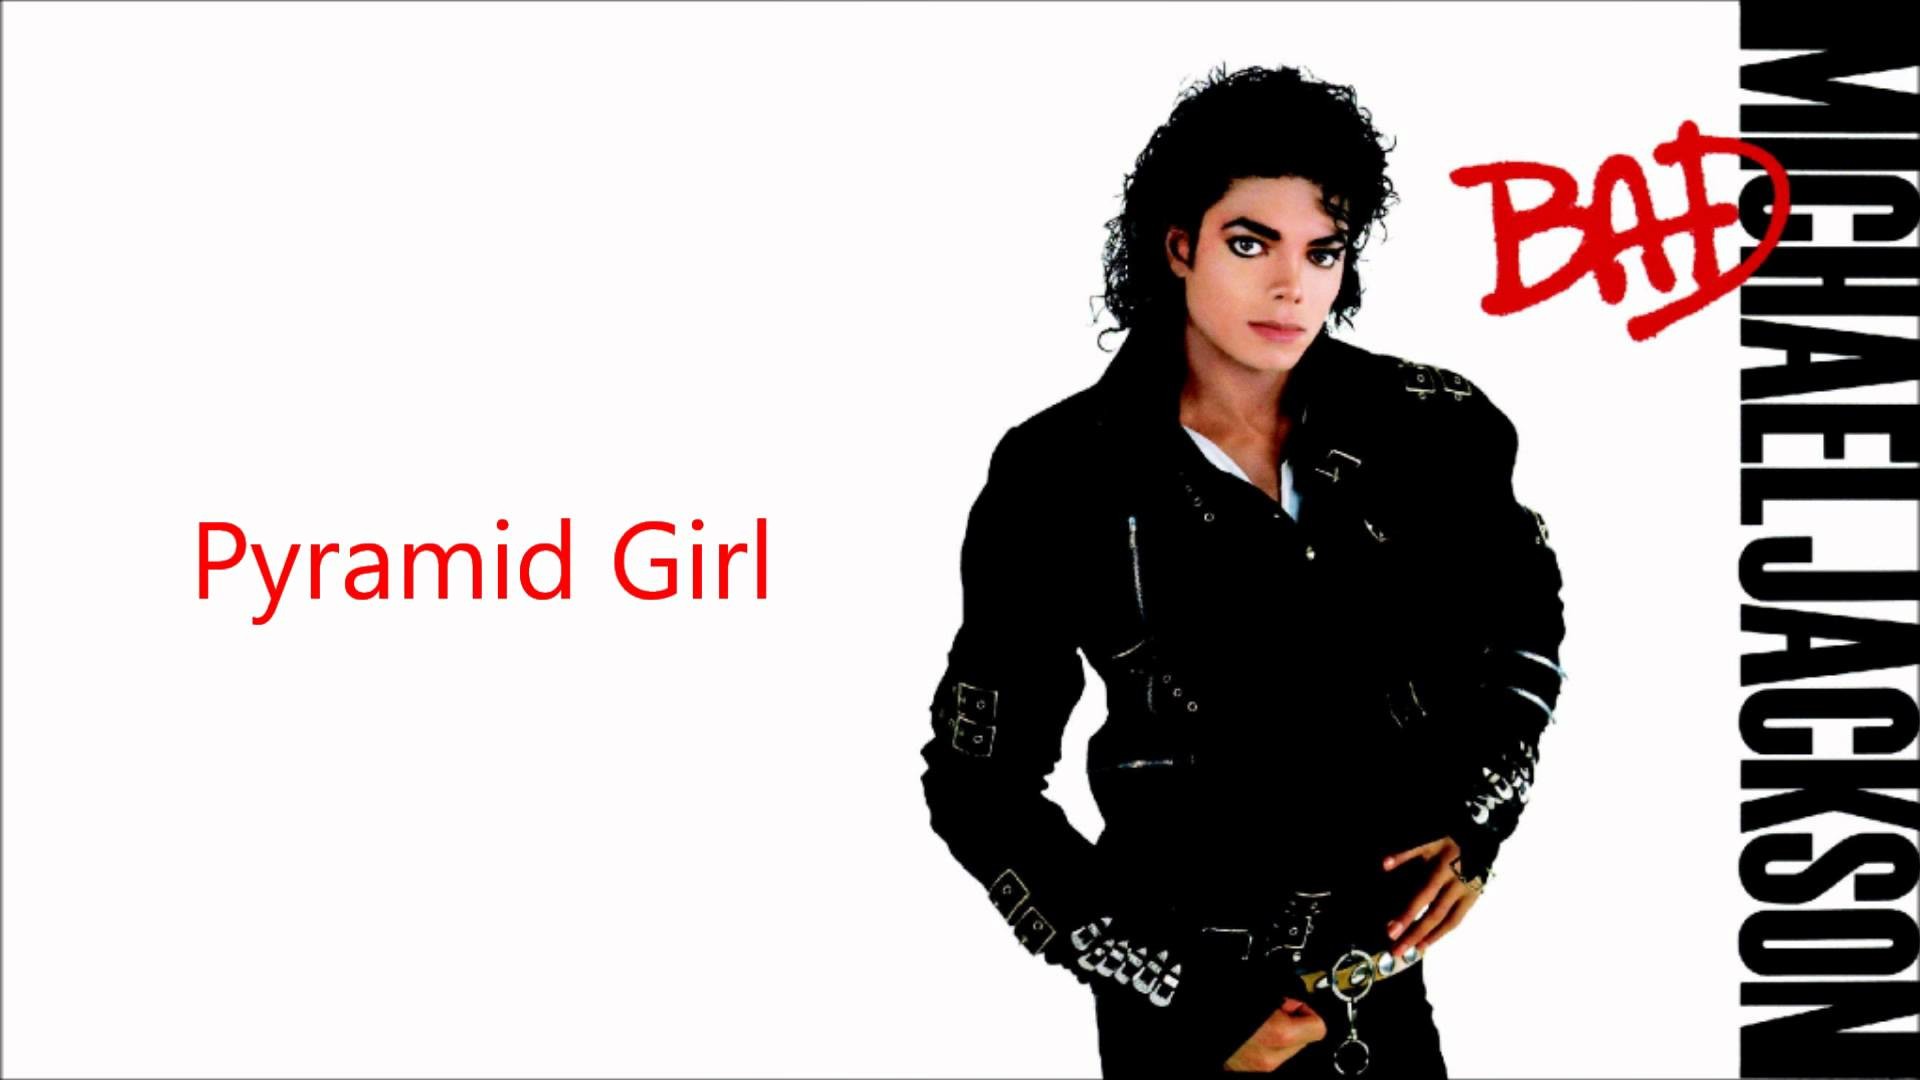 Michael jackson albums. Michael Jackson. Michael Jackson Bad 1987. Michael Jackson Bad обложка.